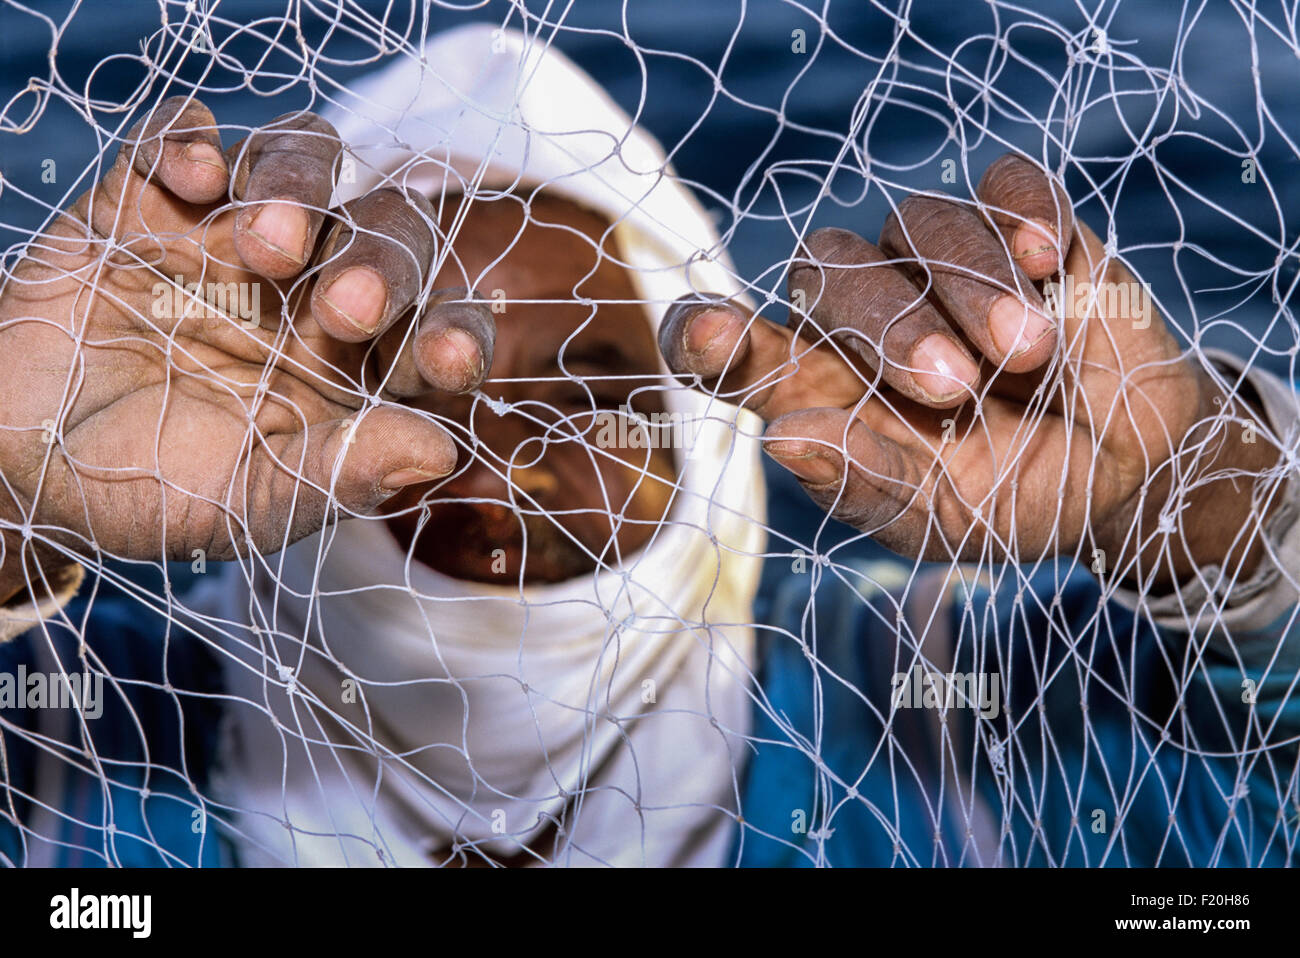 Pêcheur bédouin examinant les récifs coralliens pour les dommages au filet maillant, la pêche bédouin, Golfe de Suez, Egypte - Mer Rouge. Banque D'Images